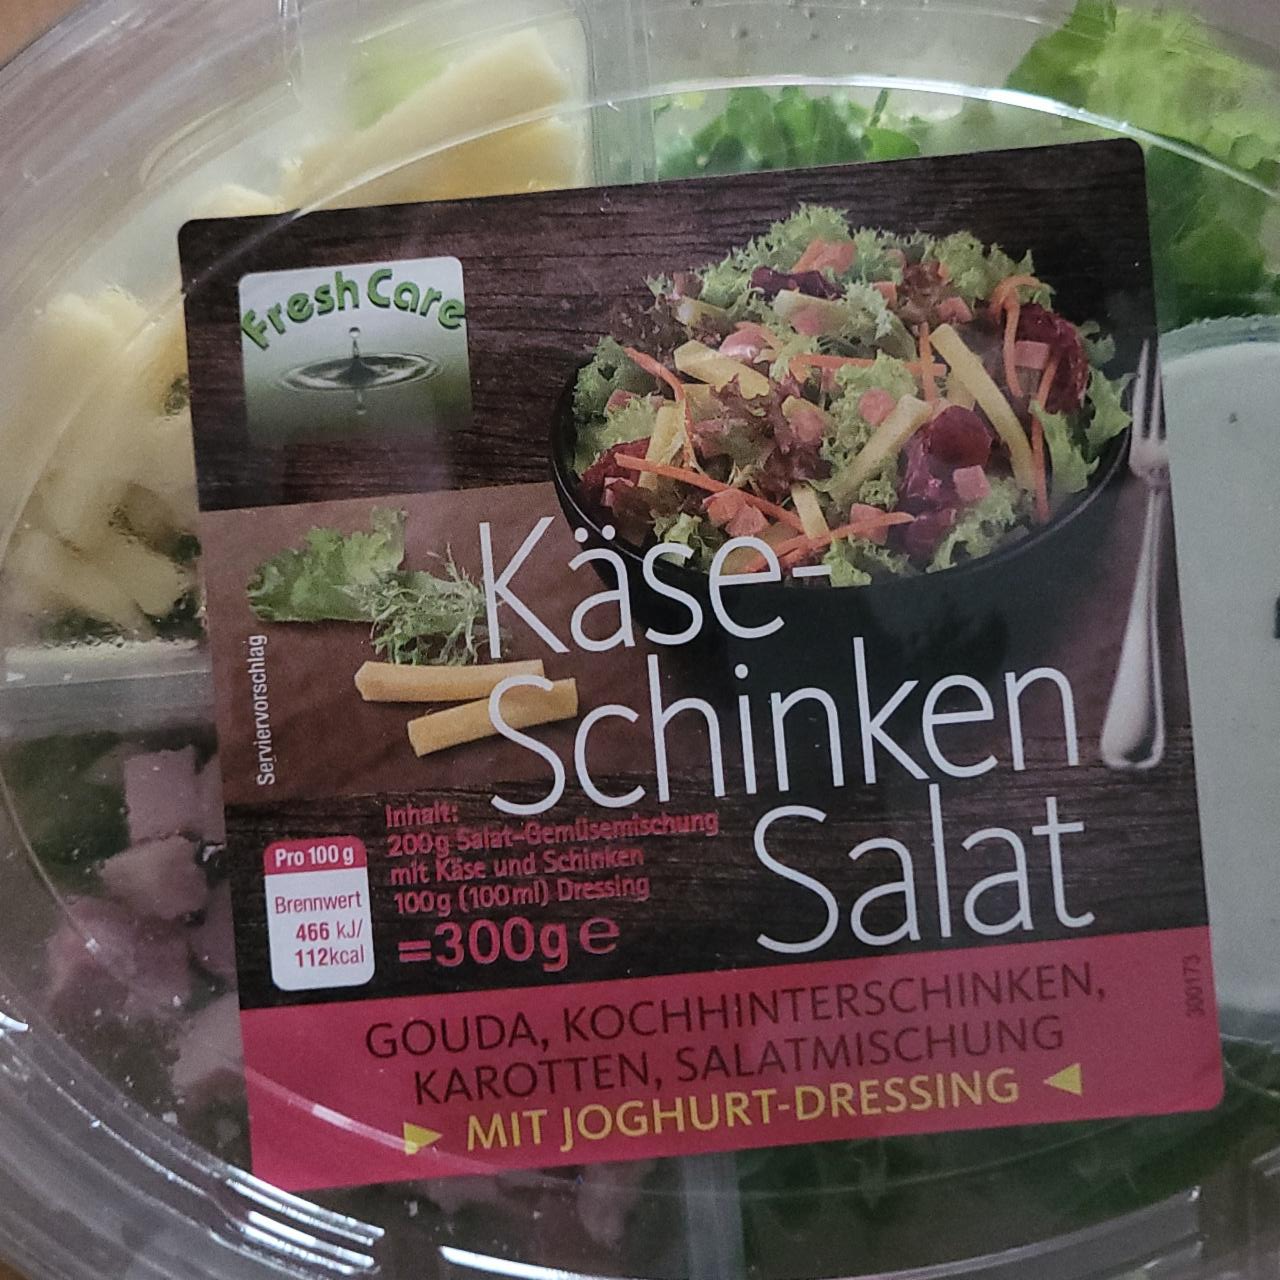 Фото - Kase-schinken salat Fresh care